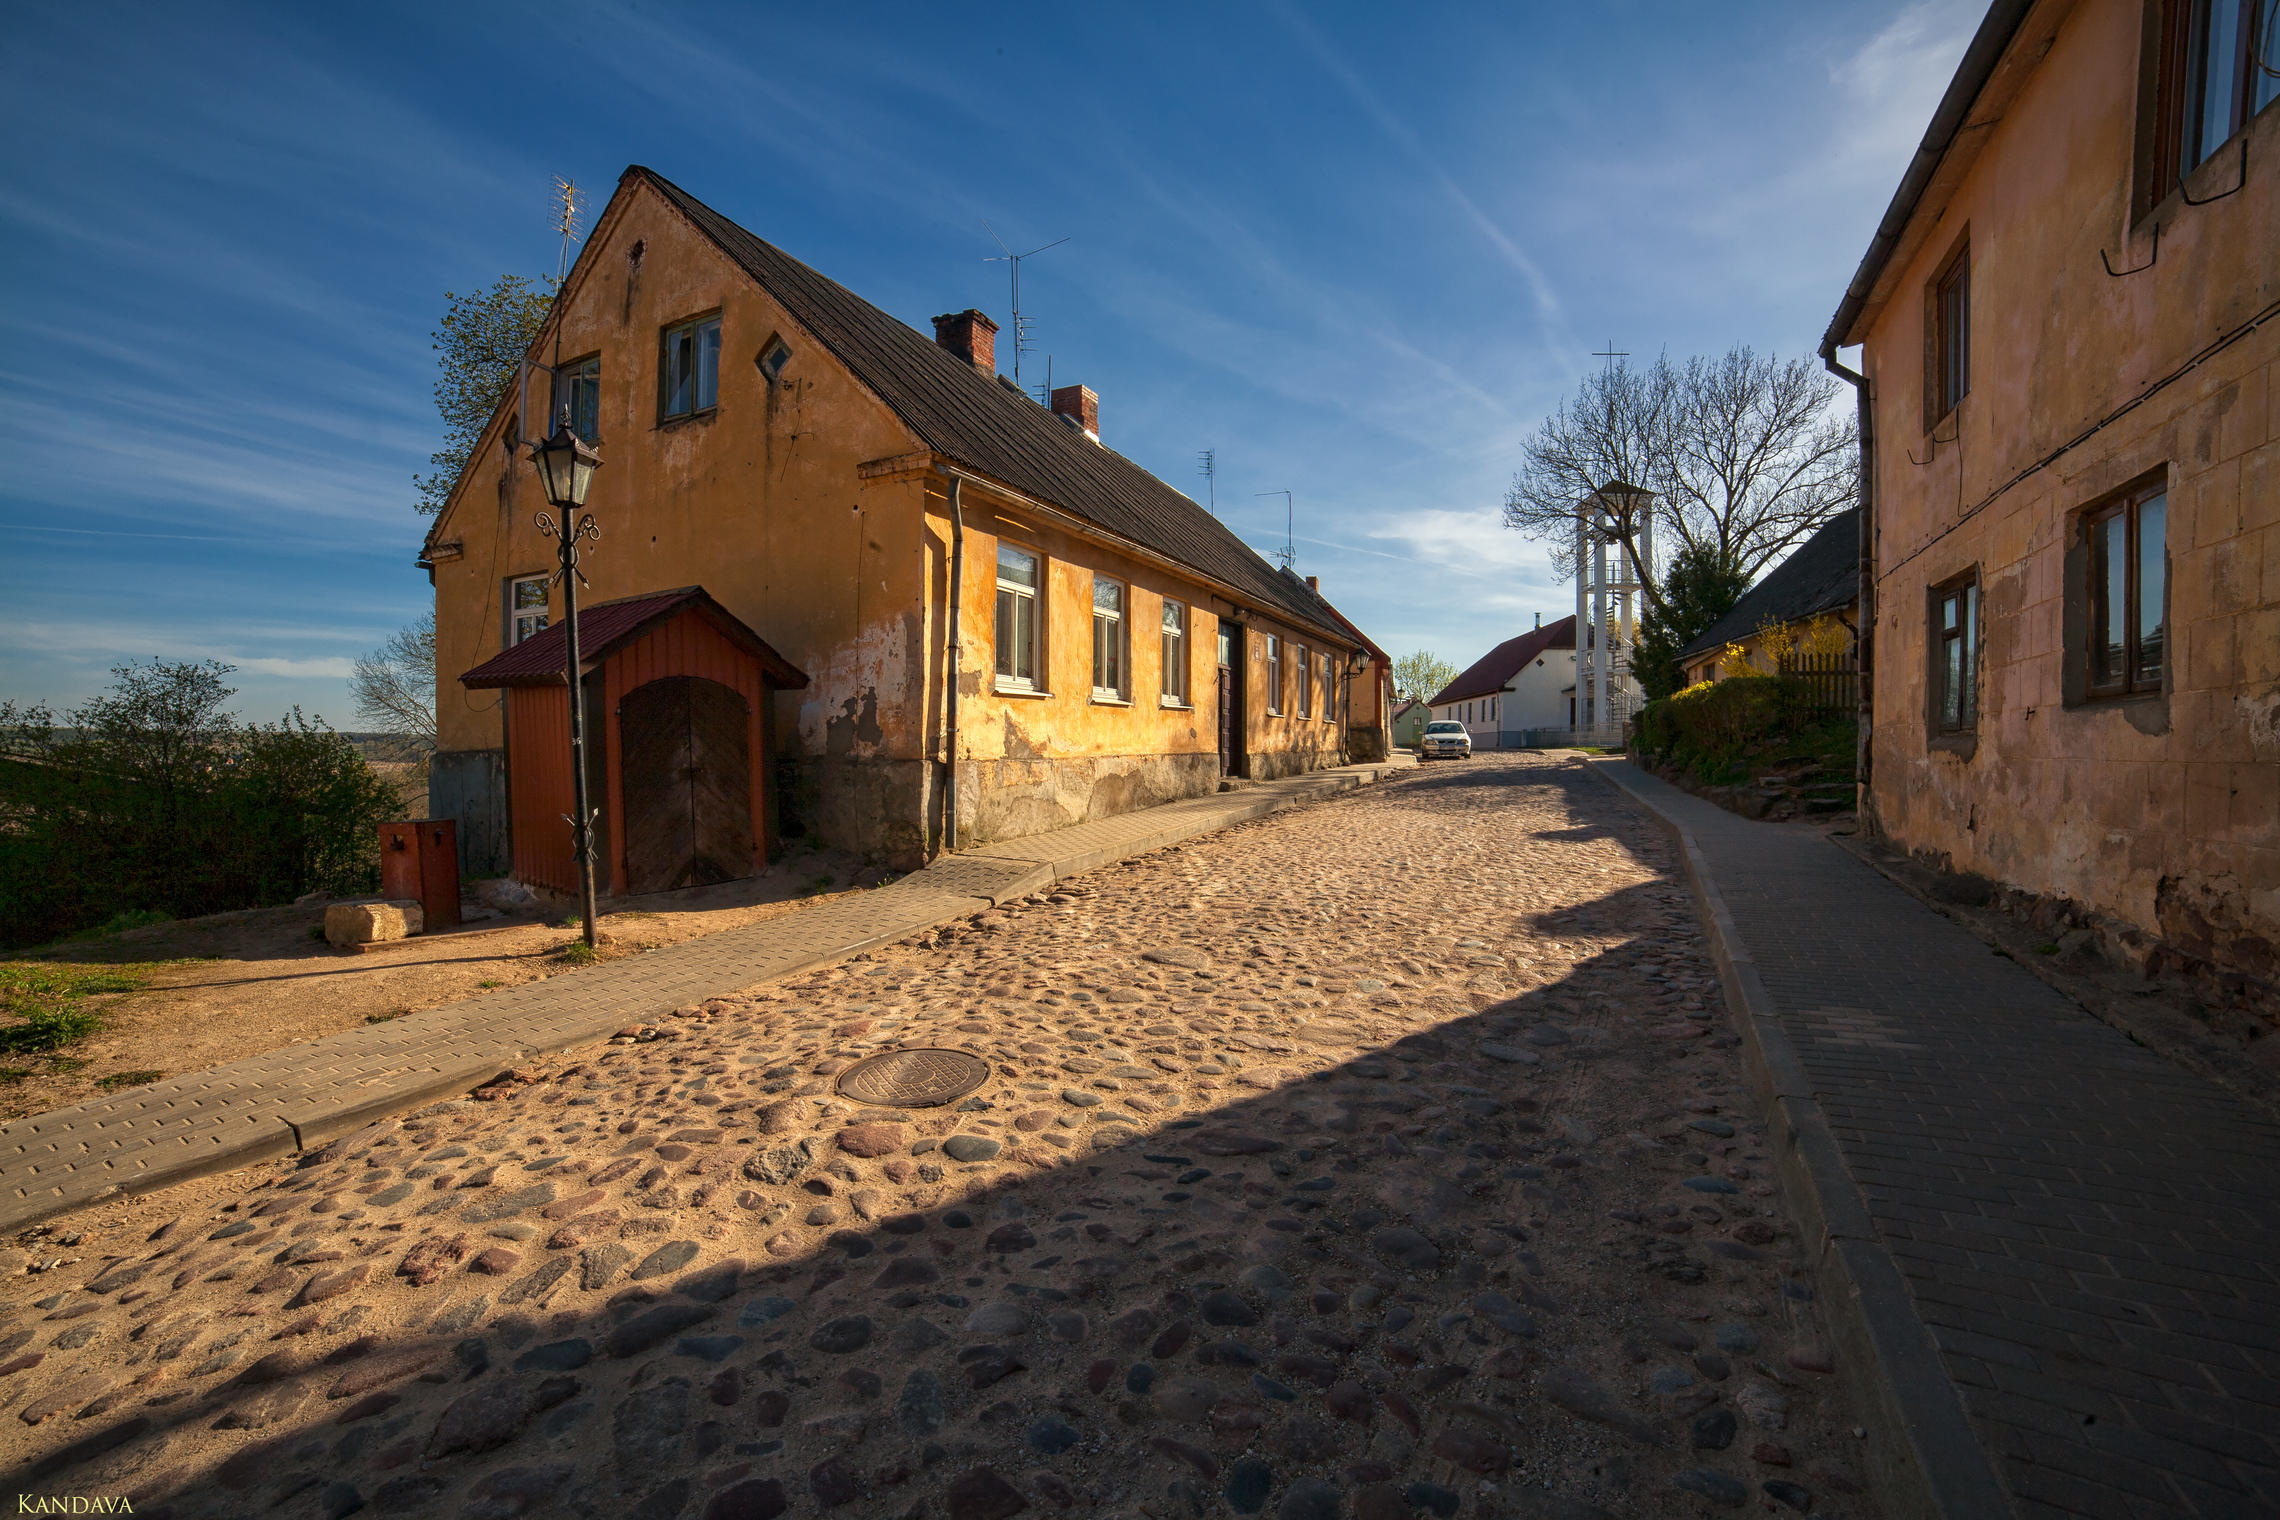 Kandava, small Latvian city